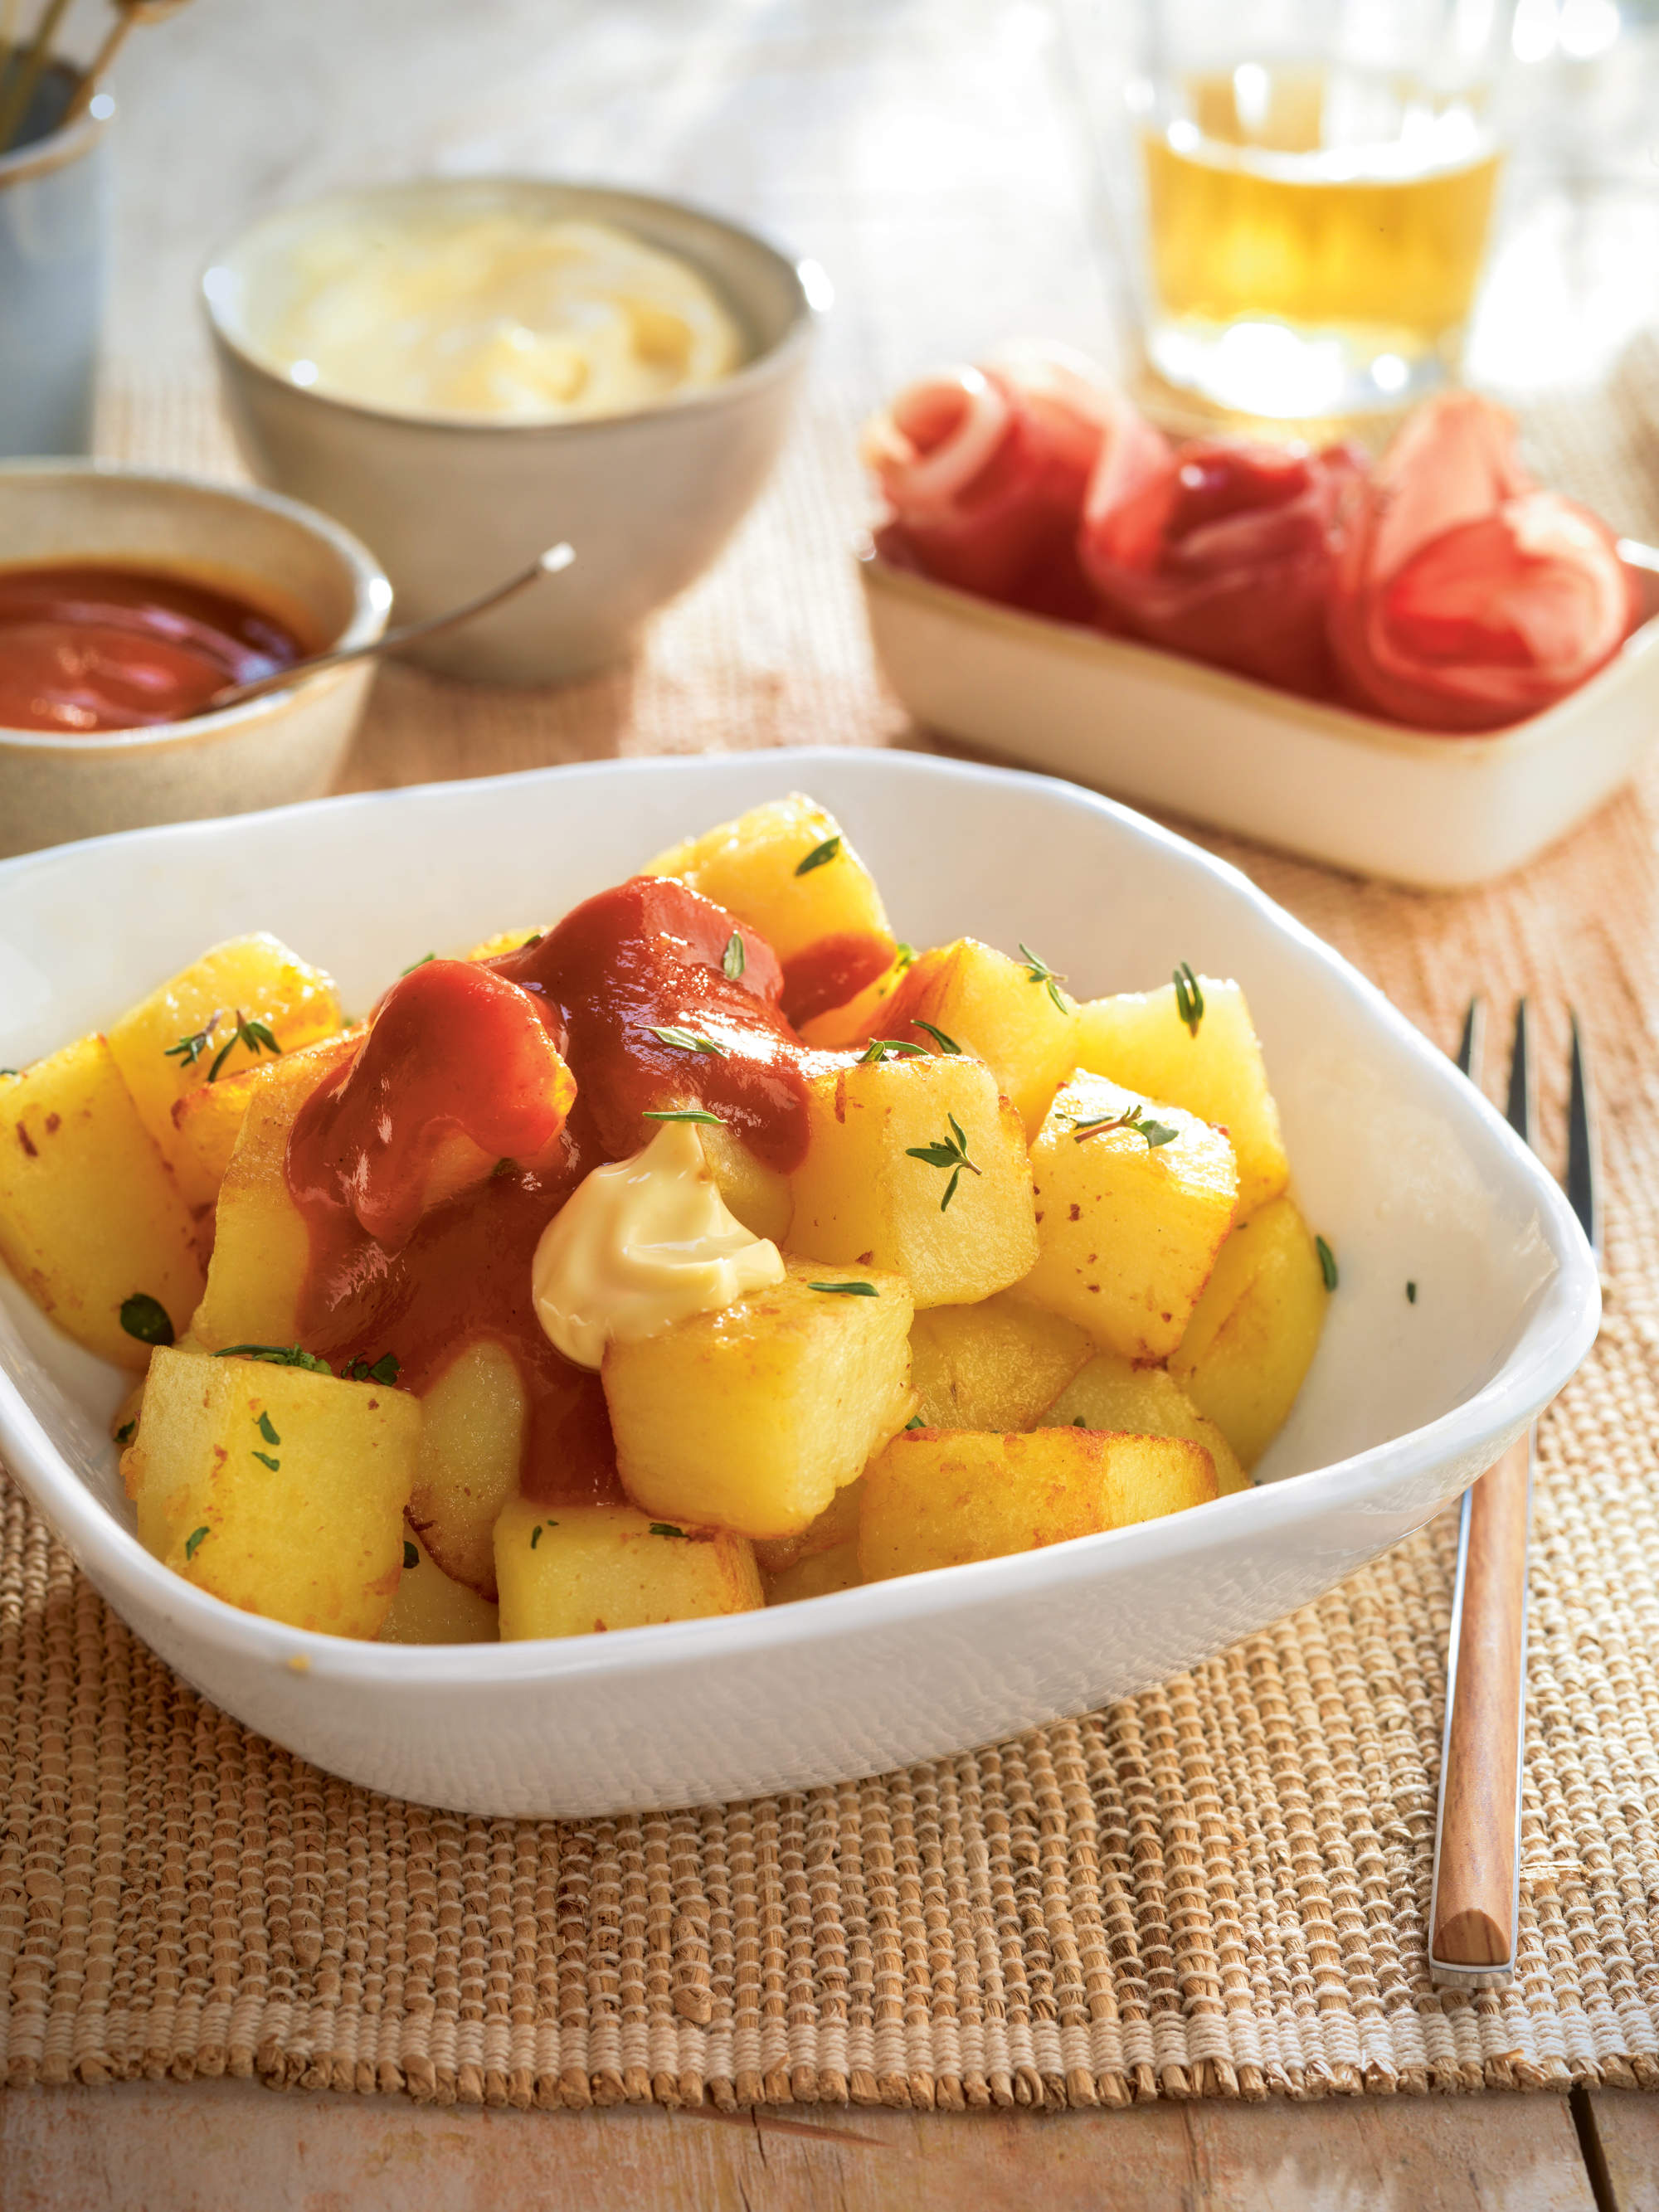 Patatas bravas con salsa alioli.